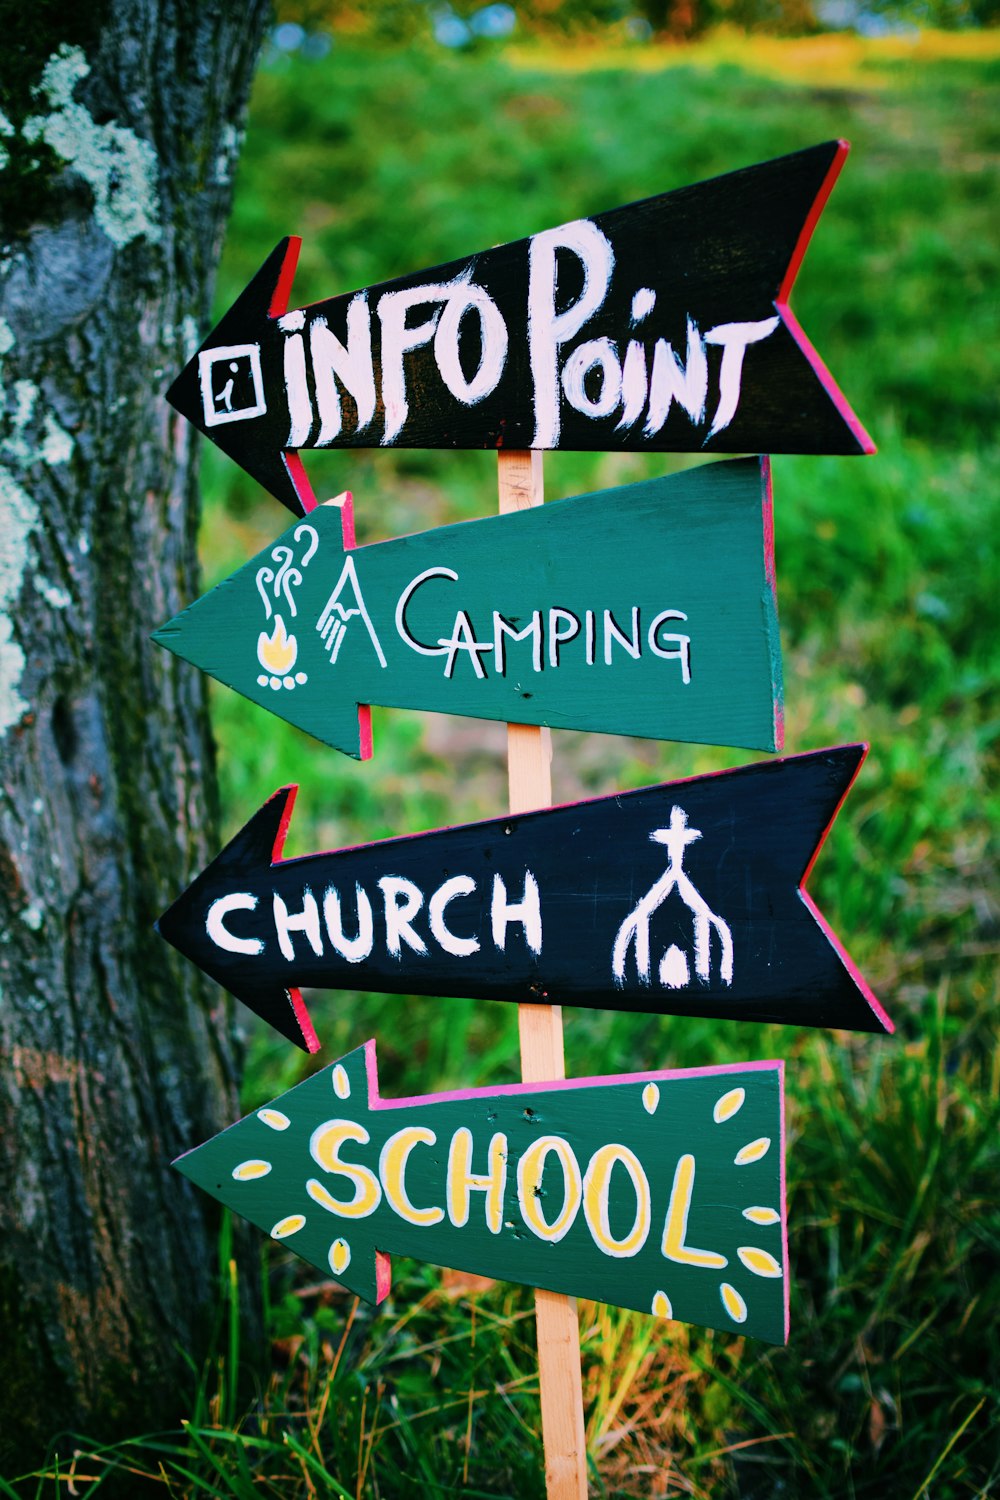 photographie sélective du point d’information, du camping, de l’église et de la signalisation de l’école à gauche